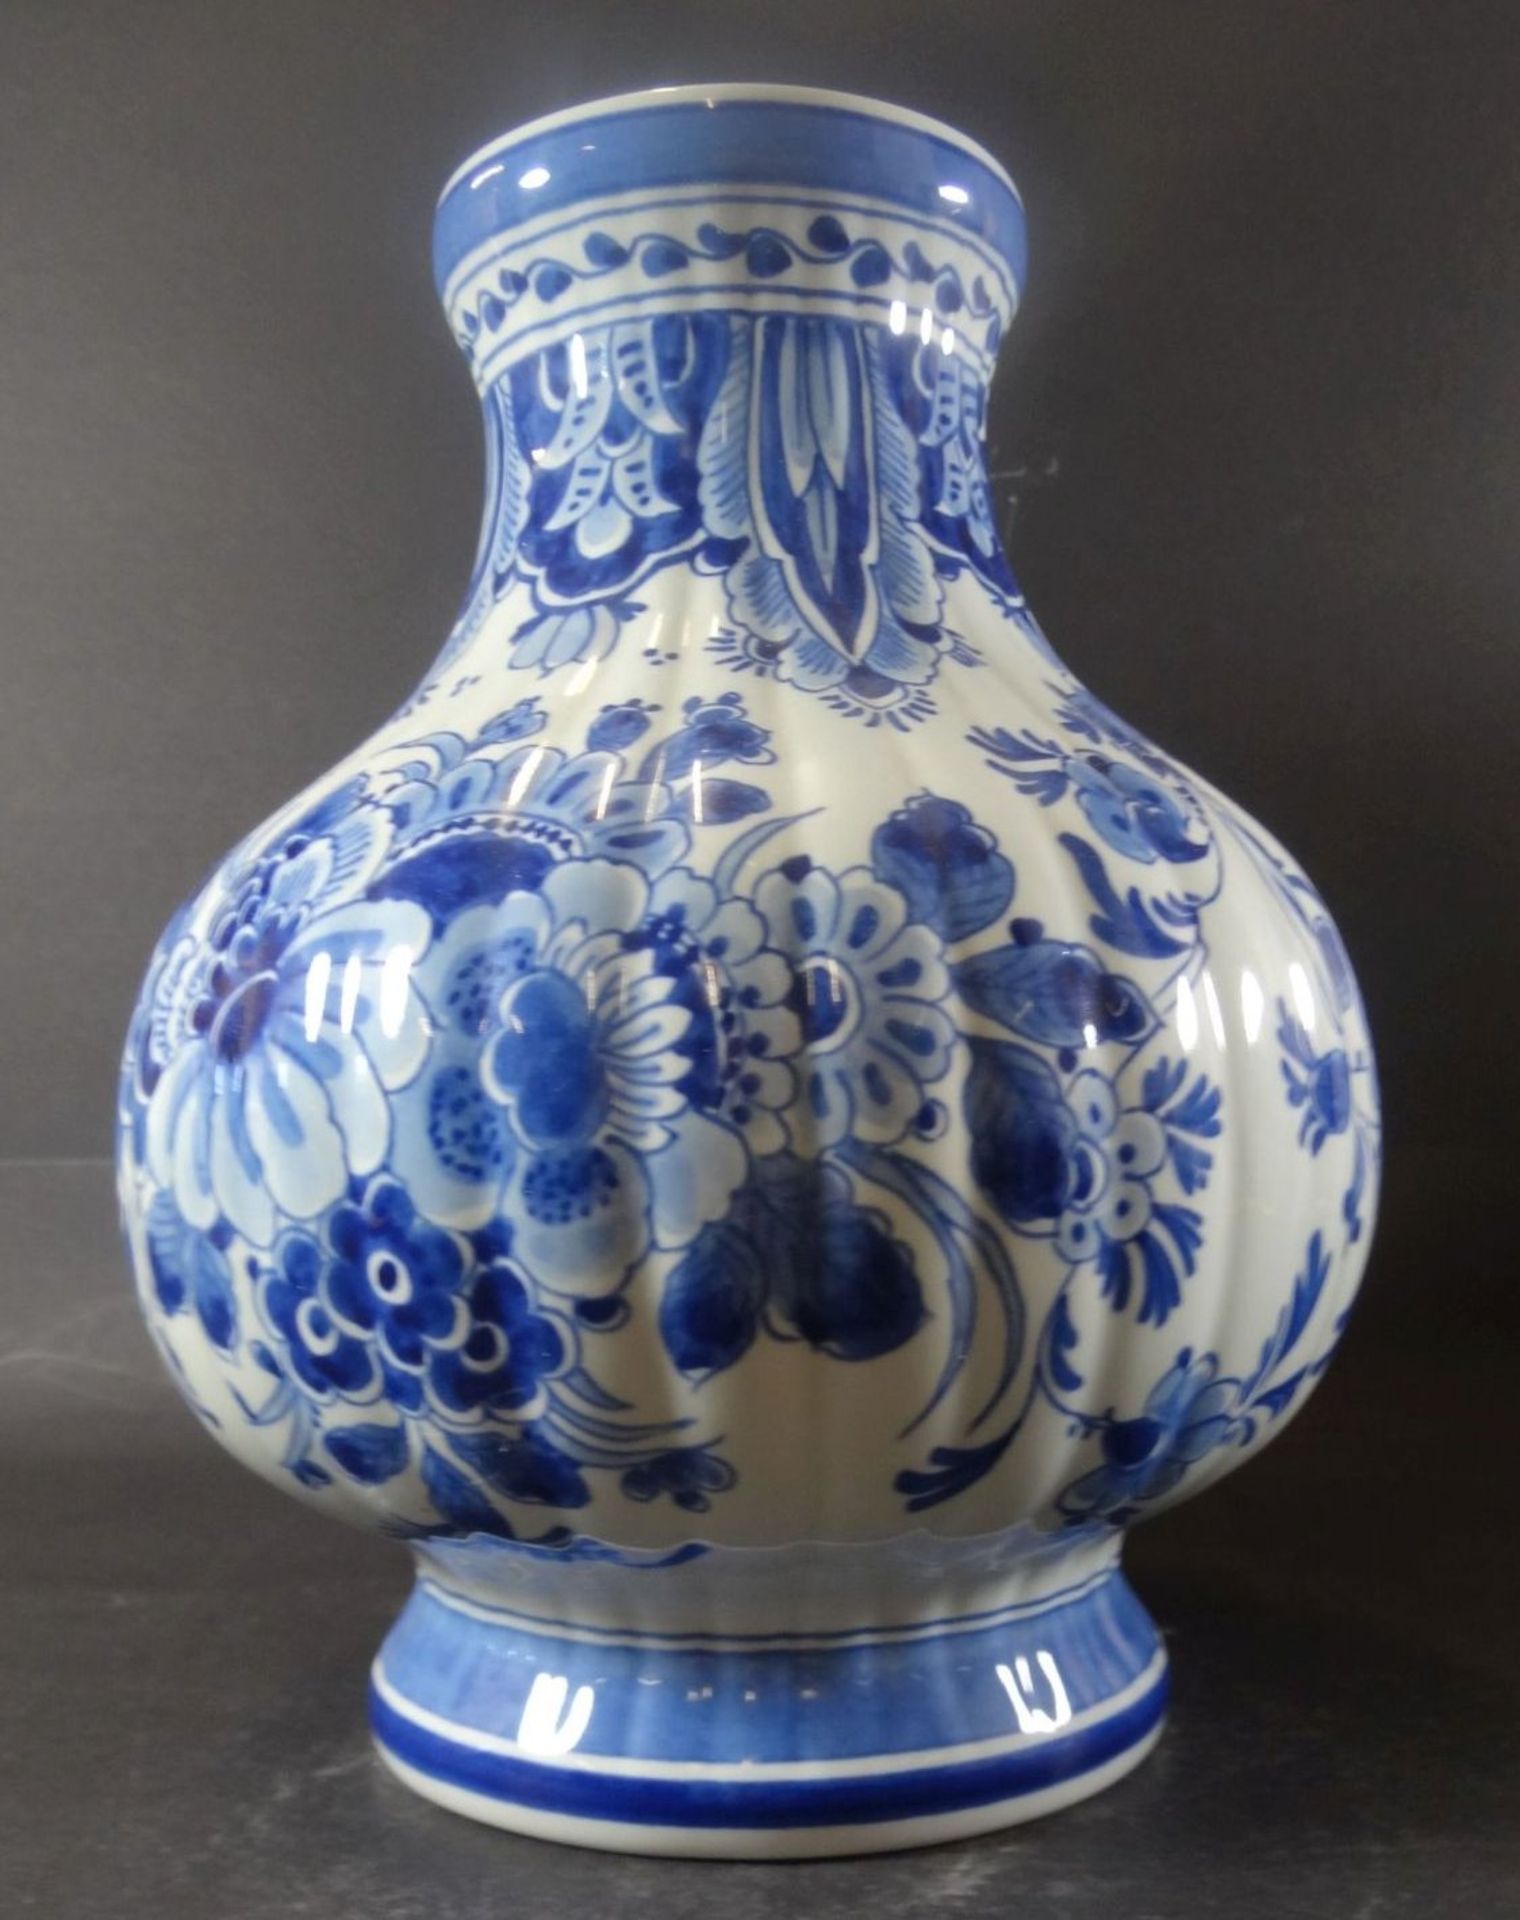 gr. Vase "Konniglike Porcelayne fles" Delft, H-24 cm, D-18 cm